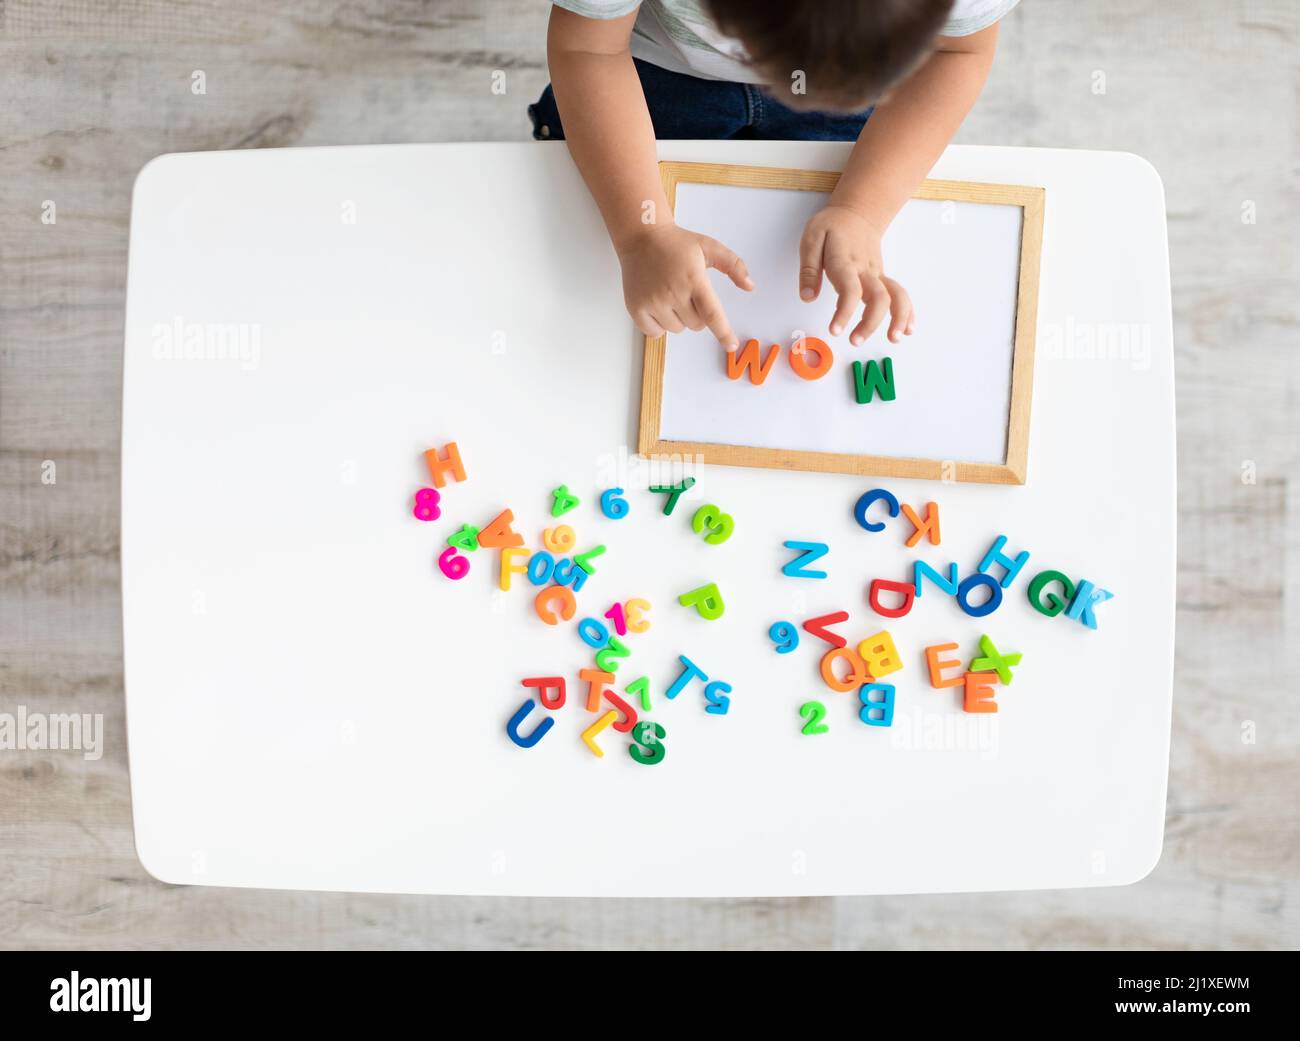 Frühe Entwicklung und Vorbereitung auf die Schule. Draufsicht des kleinen Kindes, das Wort MUTTER mit bunten Buchstaben macht, leerer Raum Stockfoto